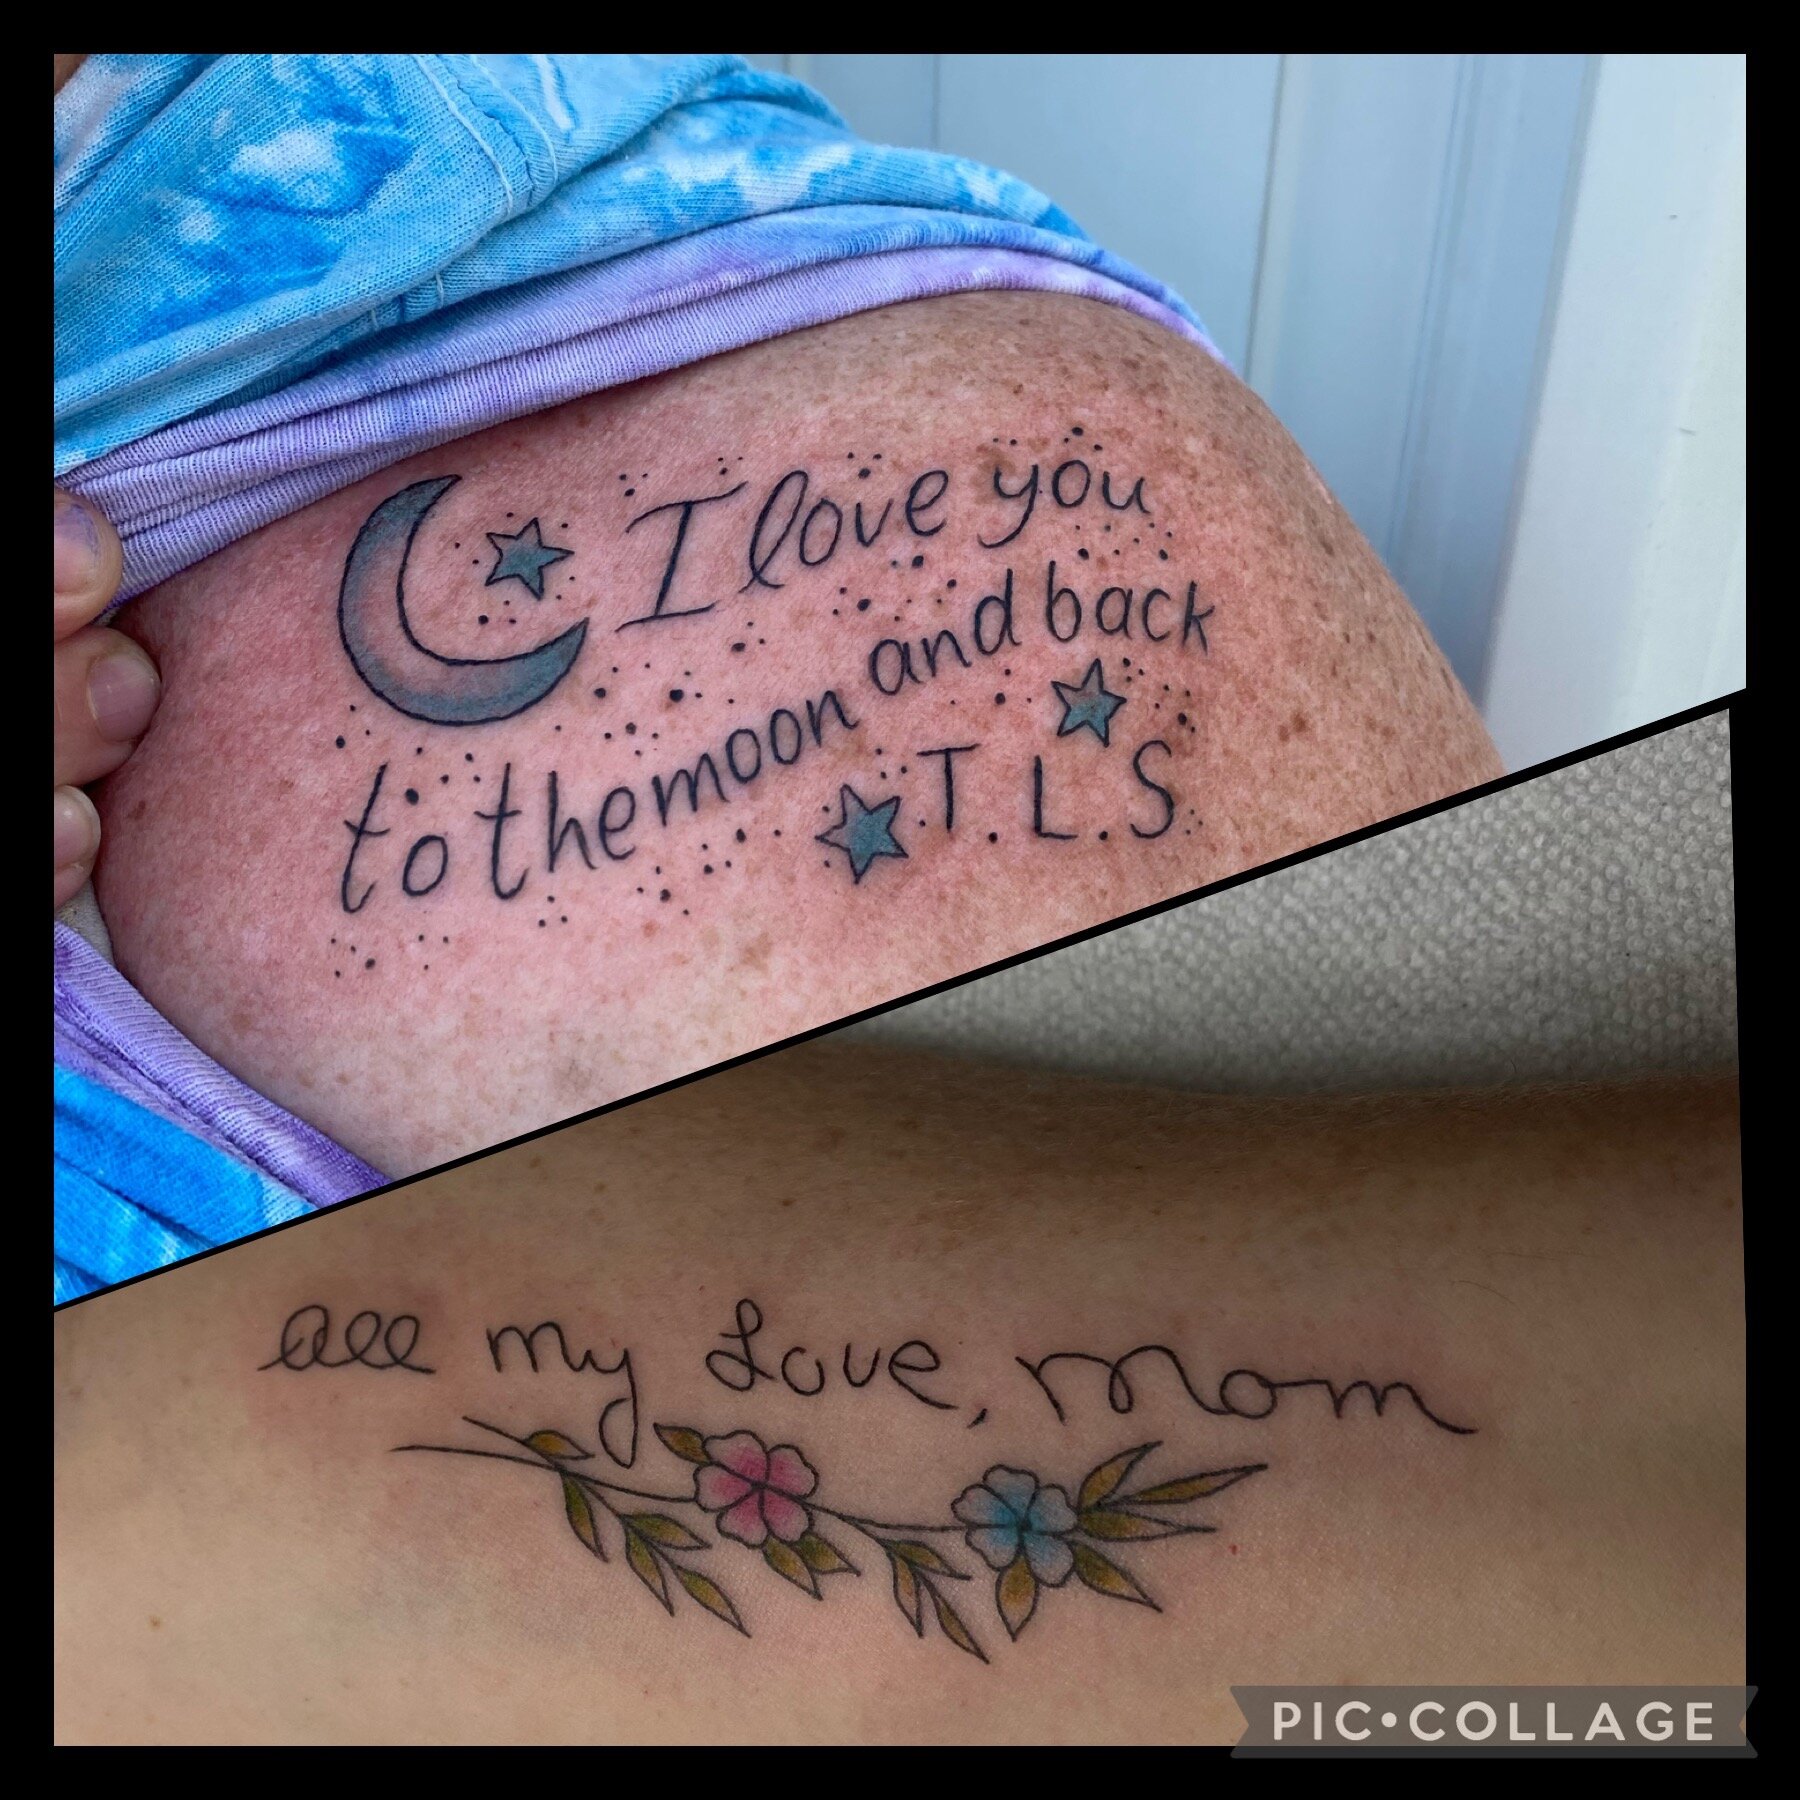 I Love Mom Retro Tattoo Vector Illustration RoyaltyFree Stock Image   Storyblocks